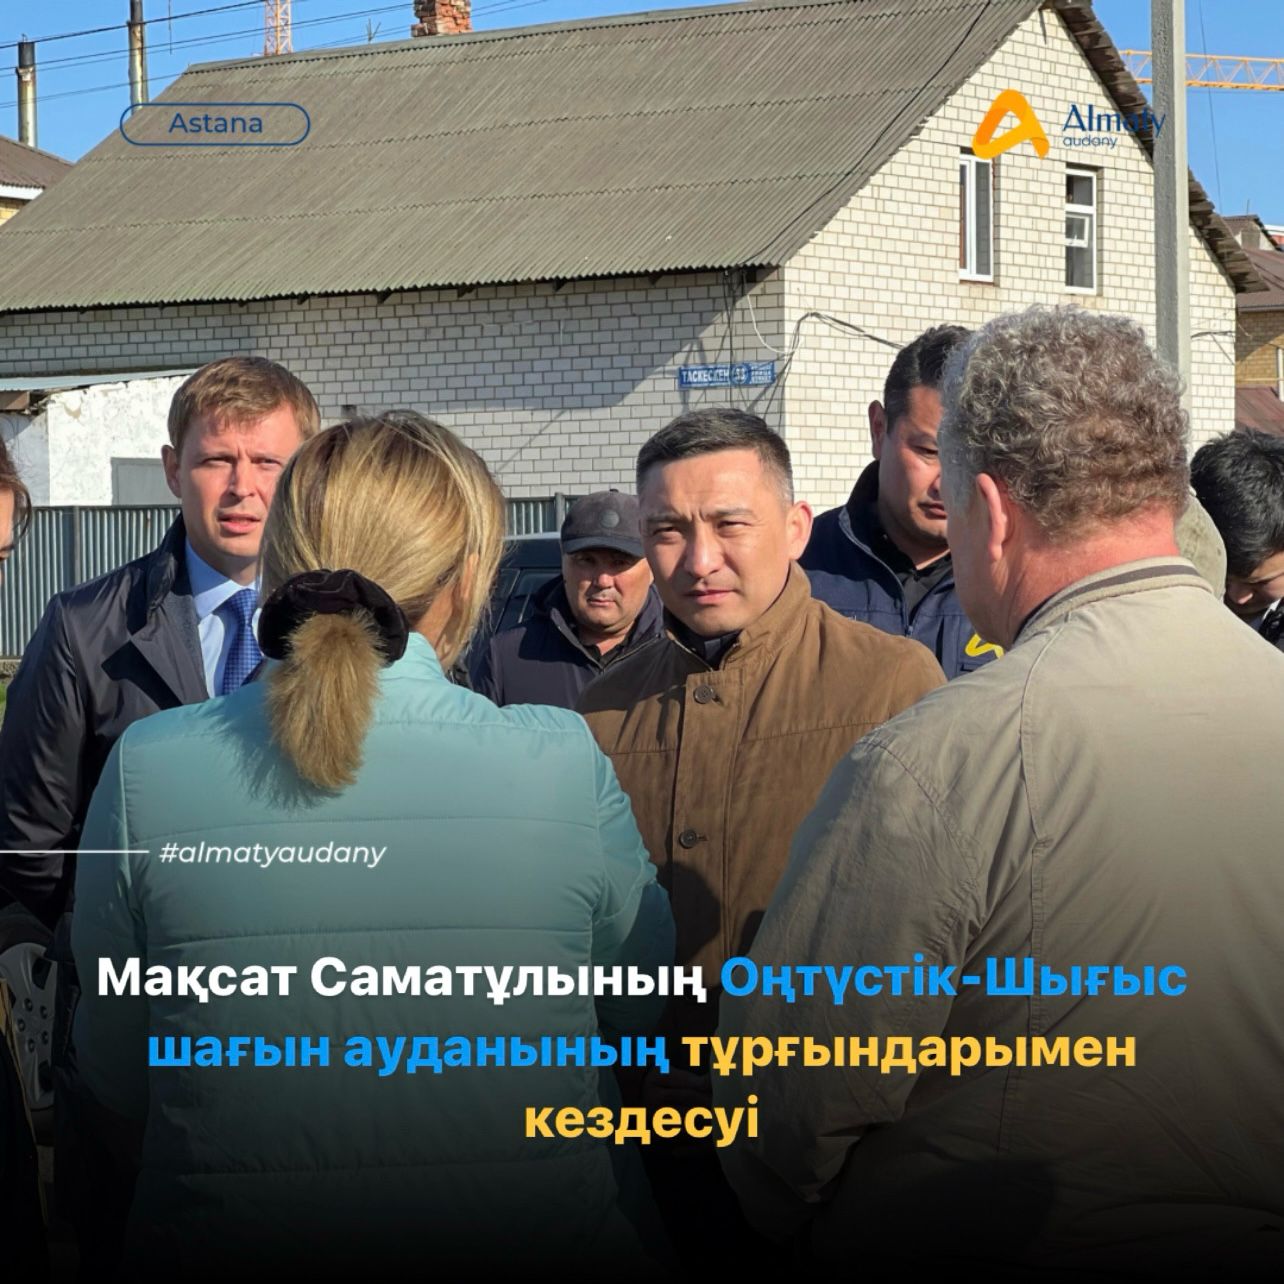 Сегодня аким района «Алматы» Максат Саматович провел встречу с жителями микрорайона Юго-Восток.